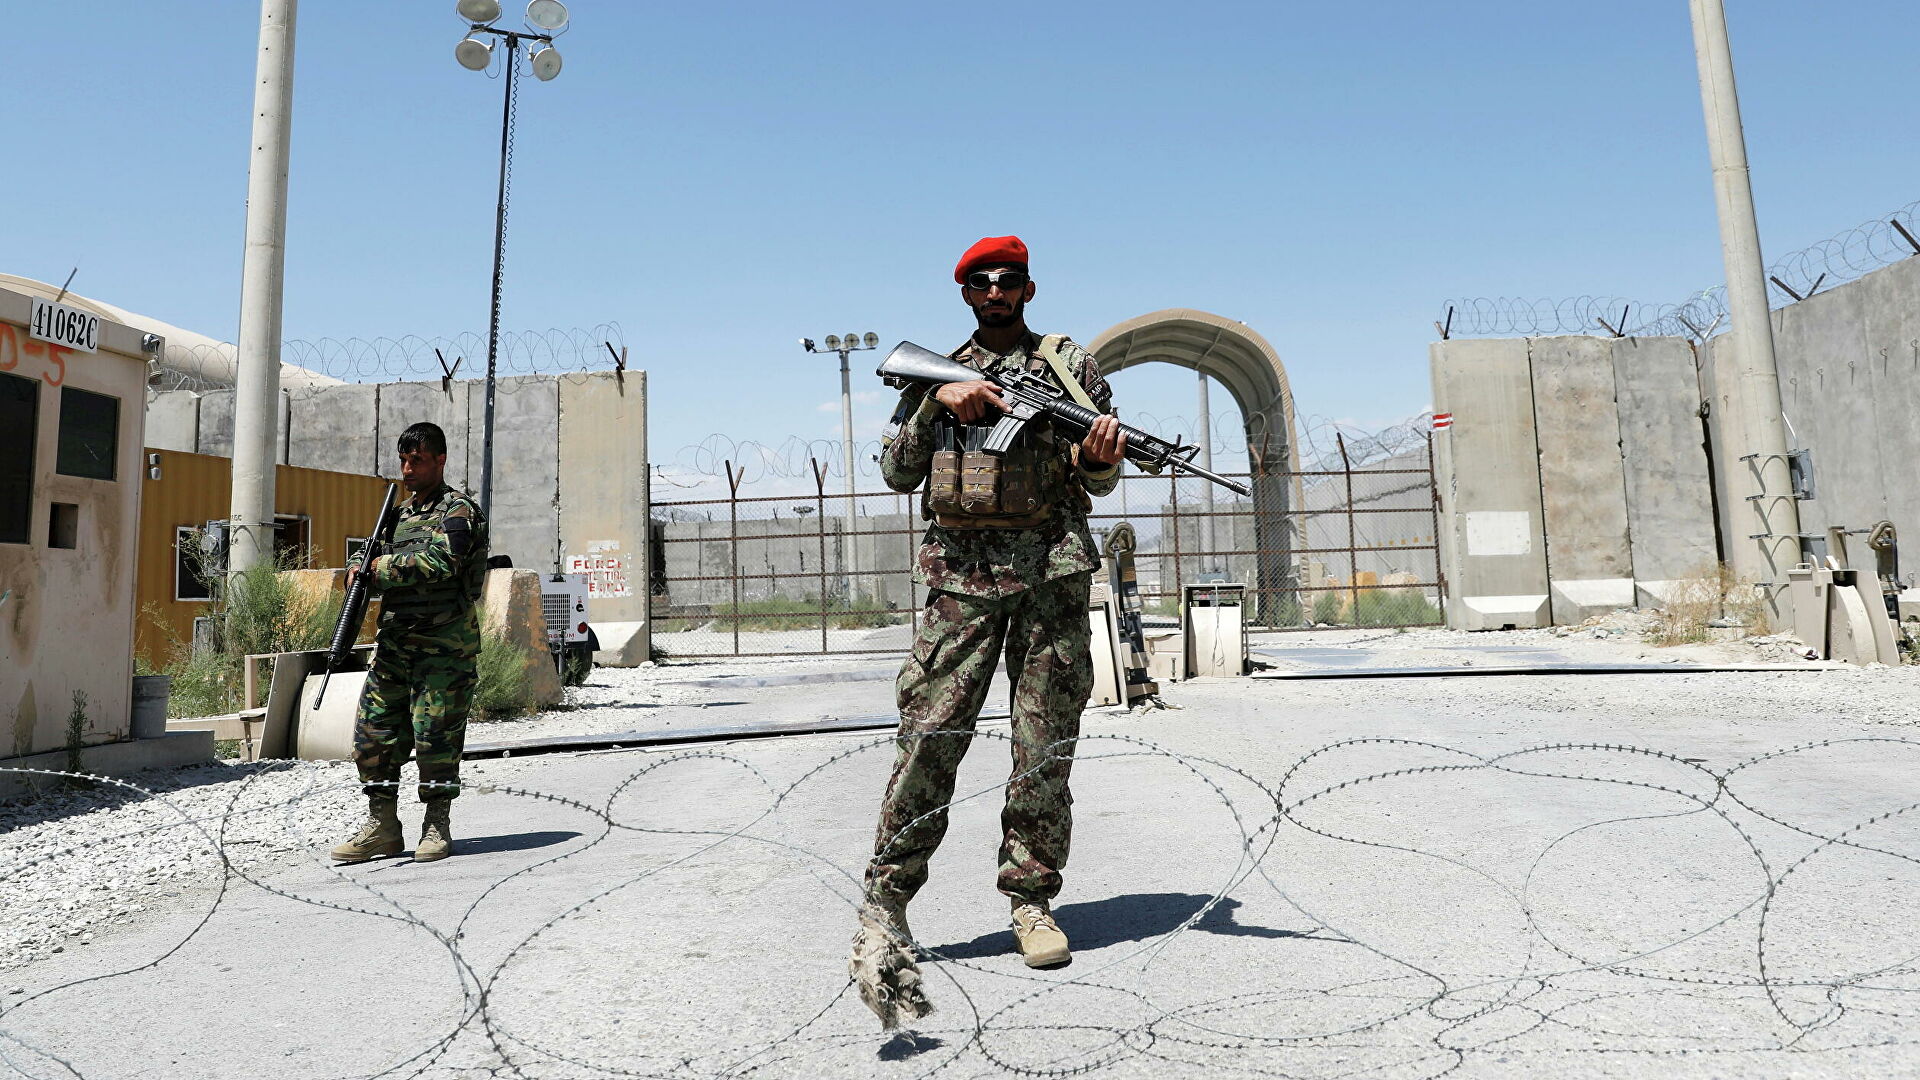 «Талибан» заявил, что гарантирует обеспечение безопасности Таджикистану 